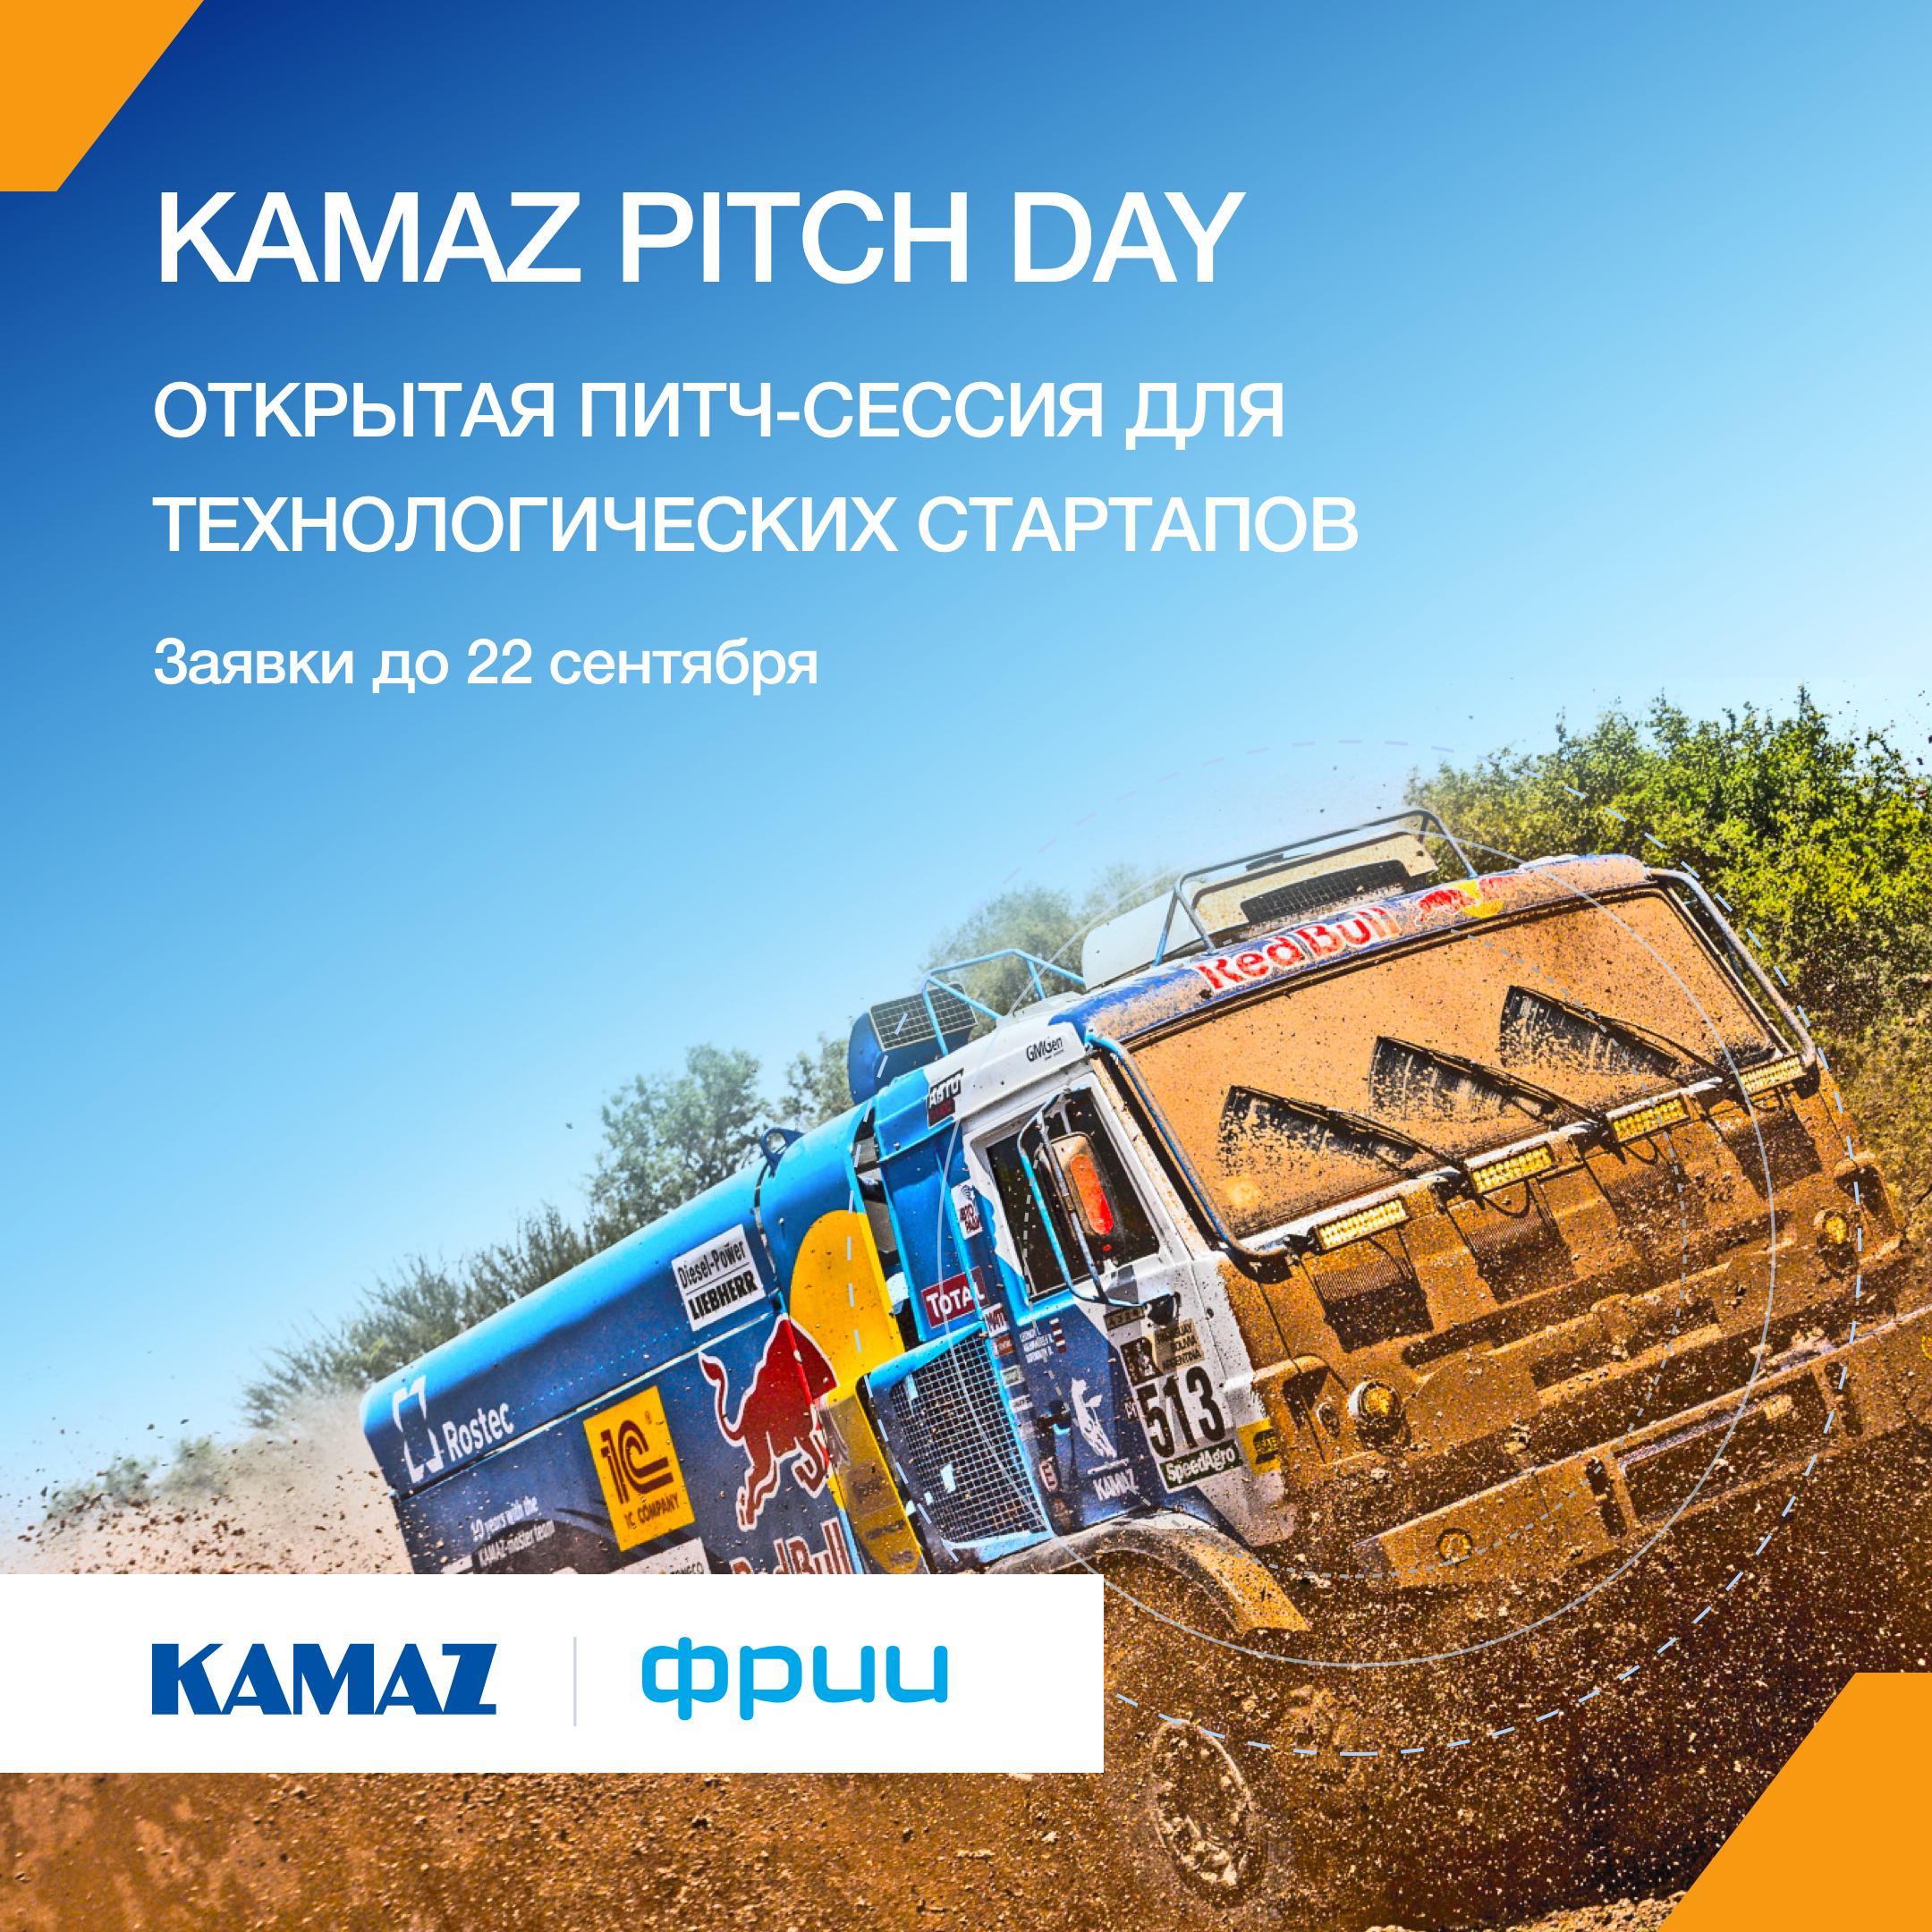 Kamaz pitch day